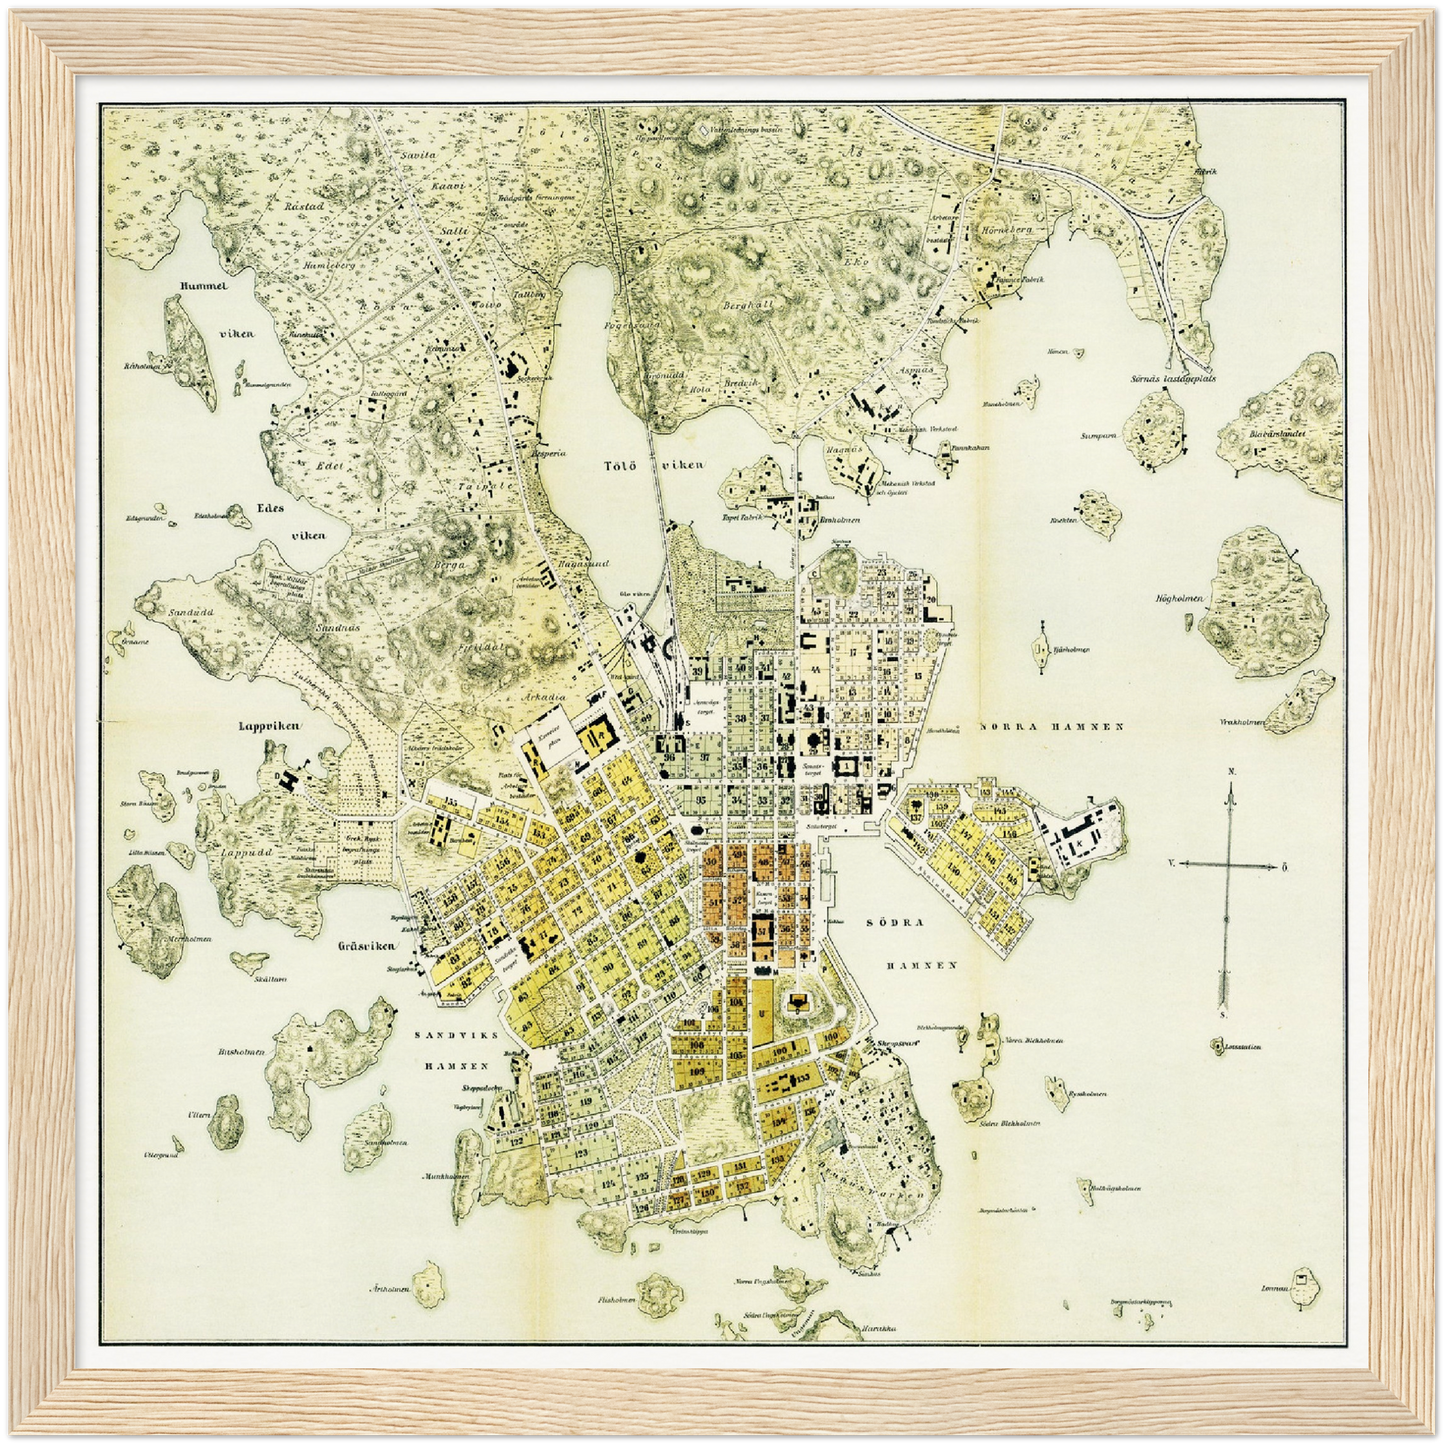 Historischer Stadtplan Helsinki um 1876